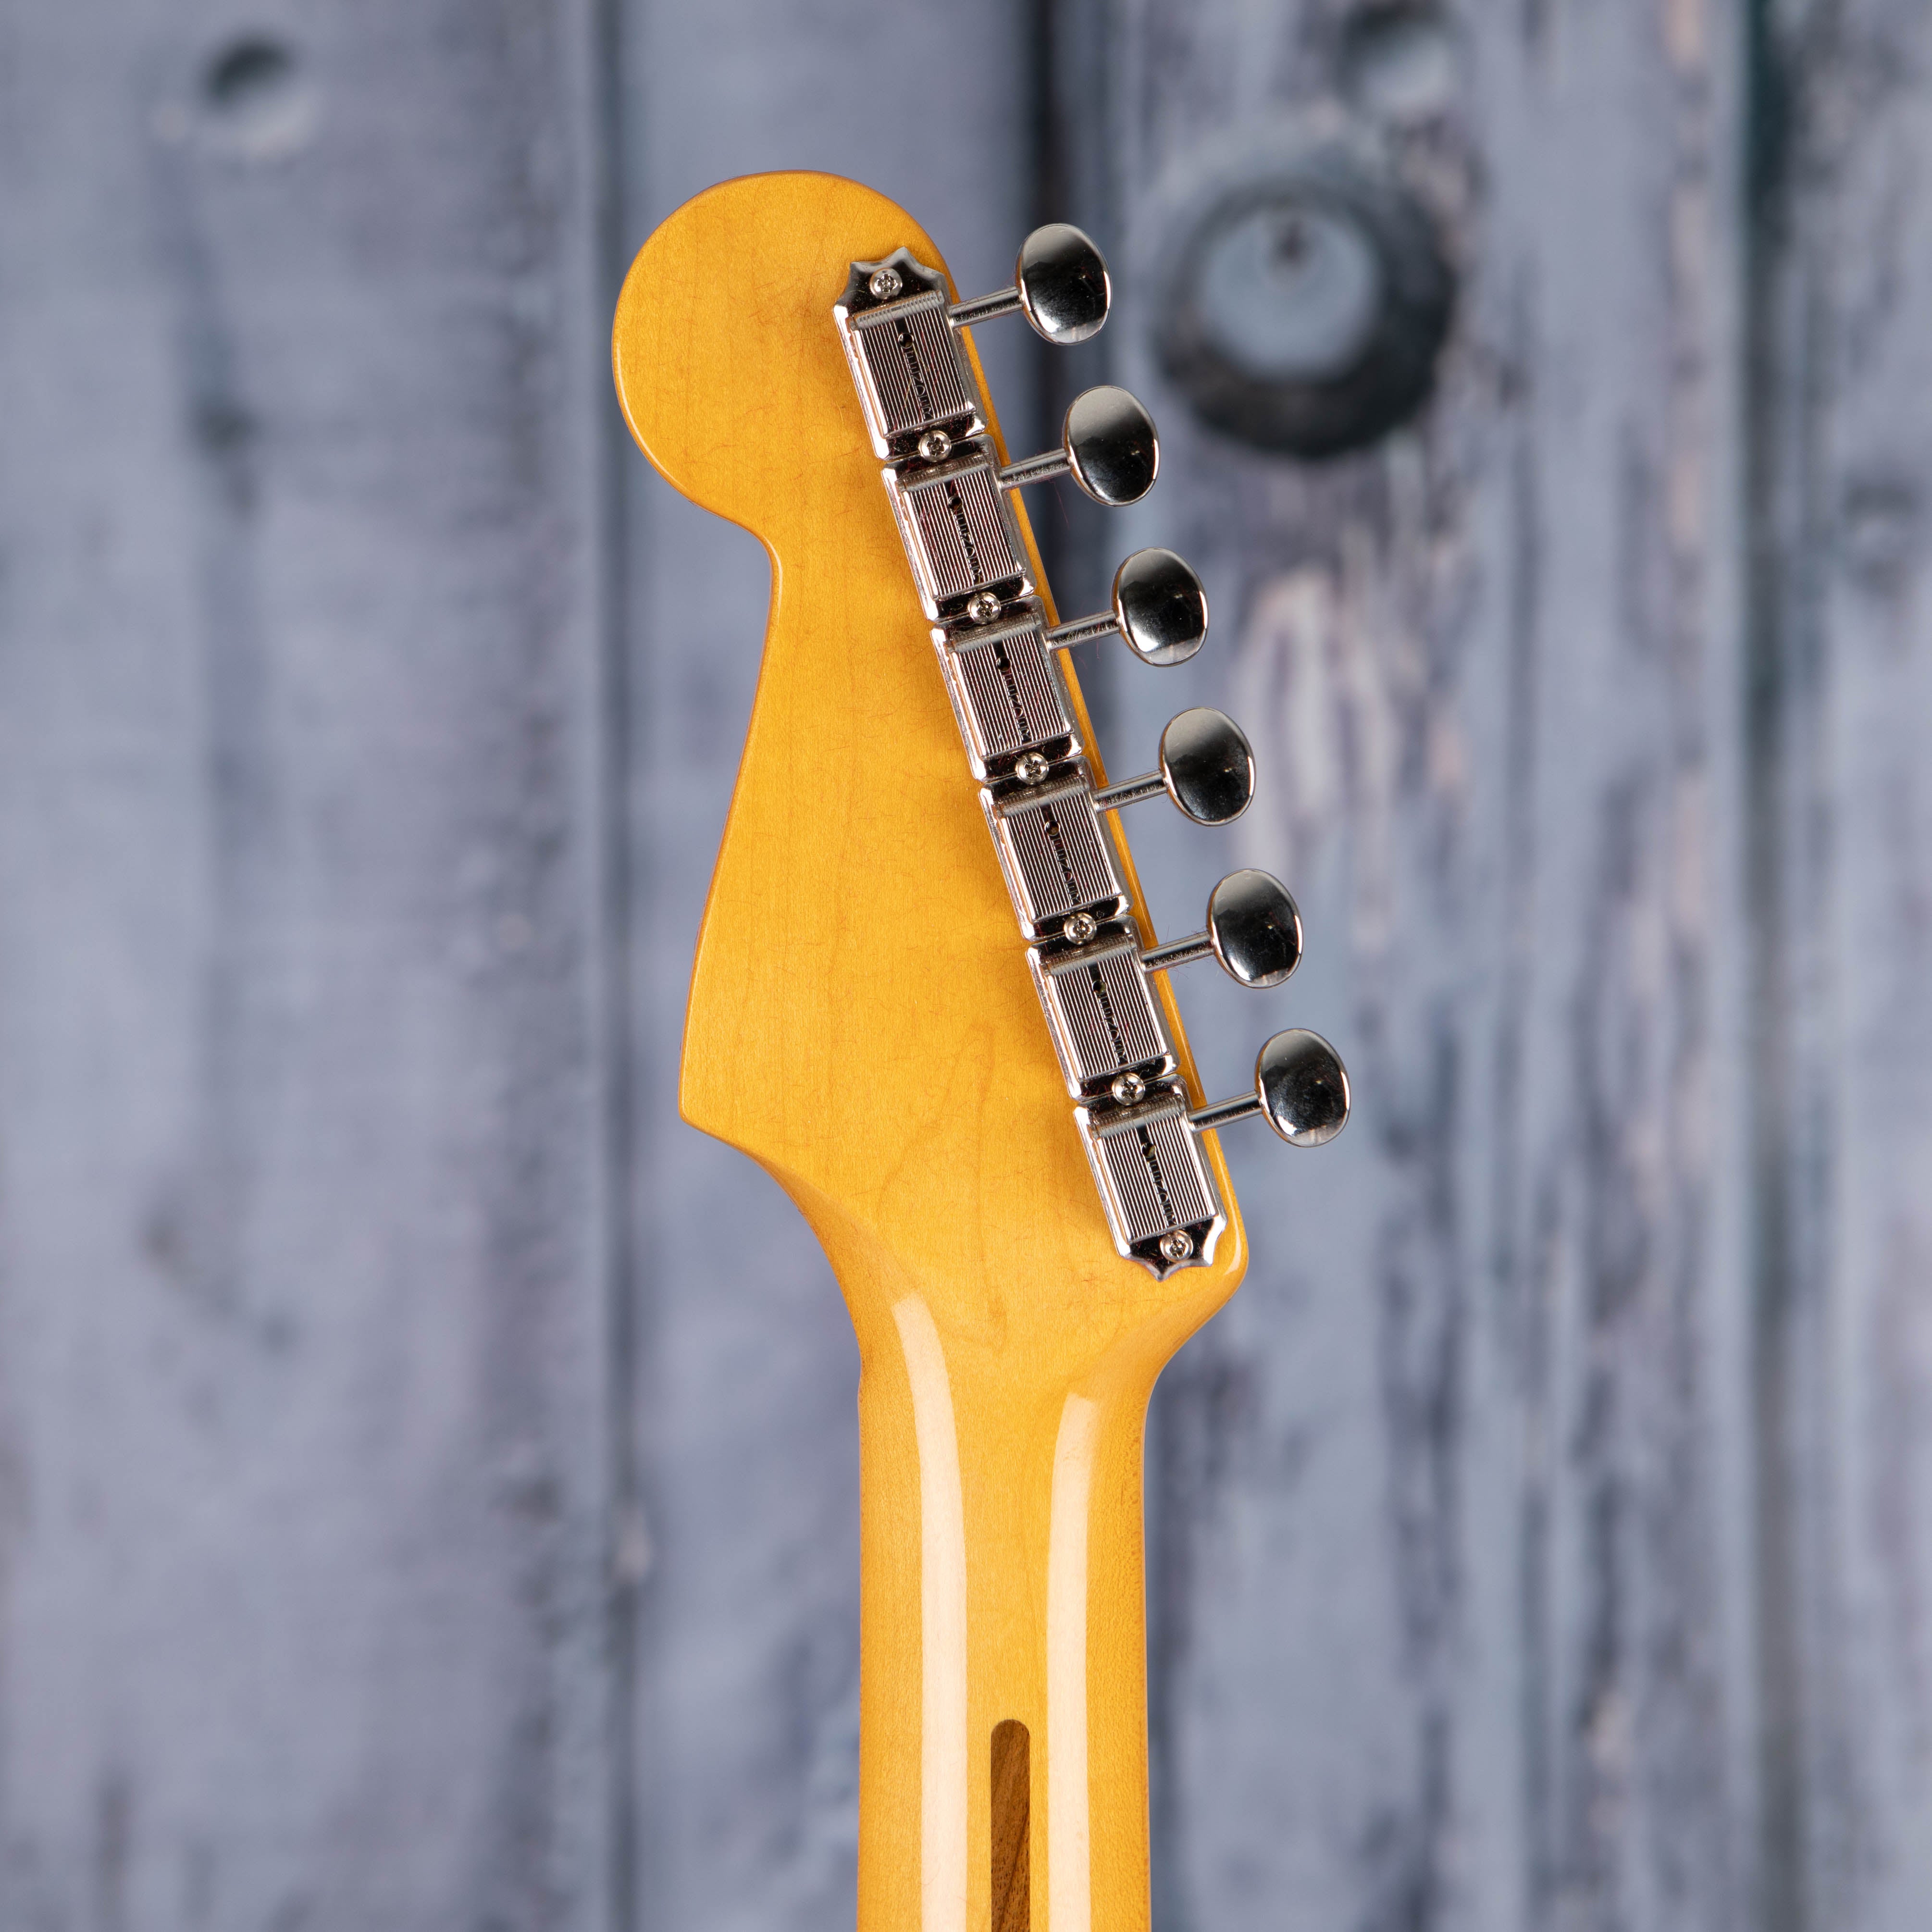 Fender American Vintage II 1957 Stratocaster Electric Guitar, Vintage Blonde, back headstock